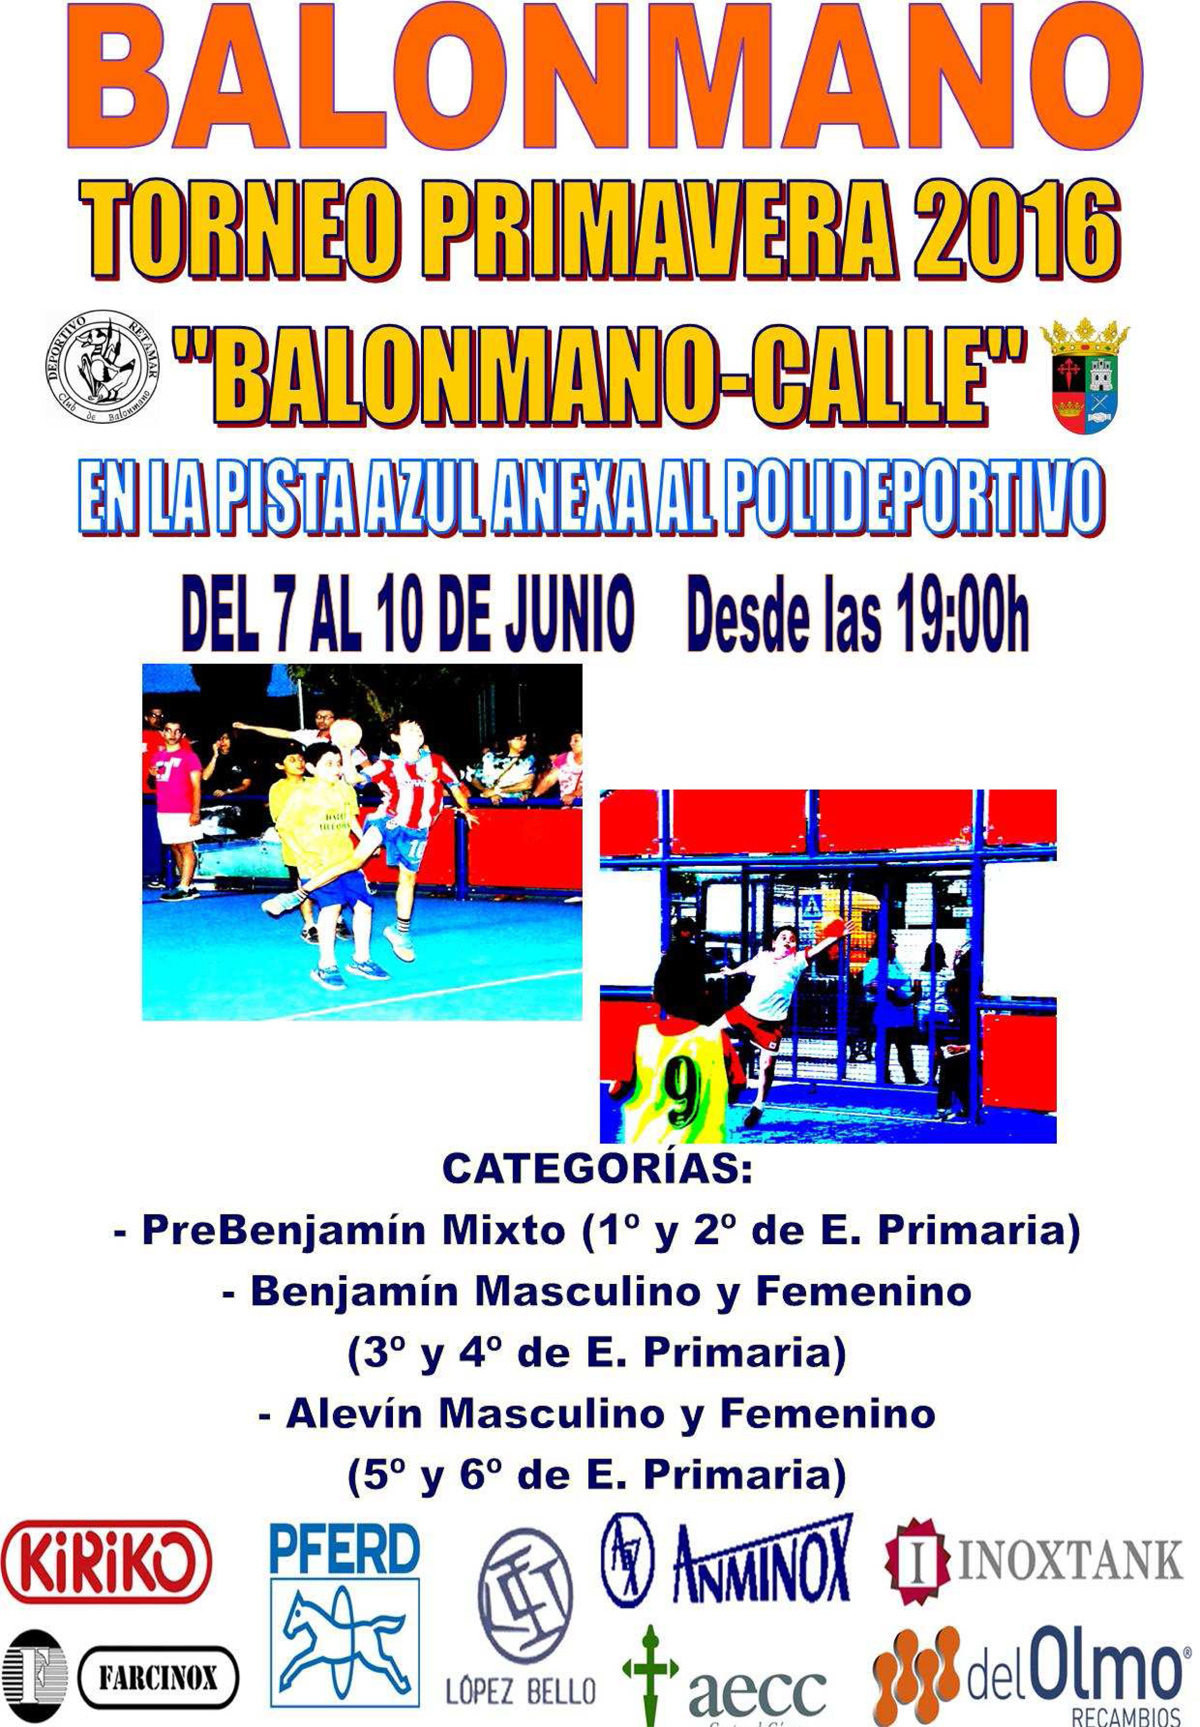 Torneo de primavera 2016 "Balonmano Calle"